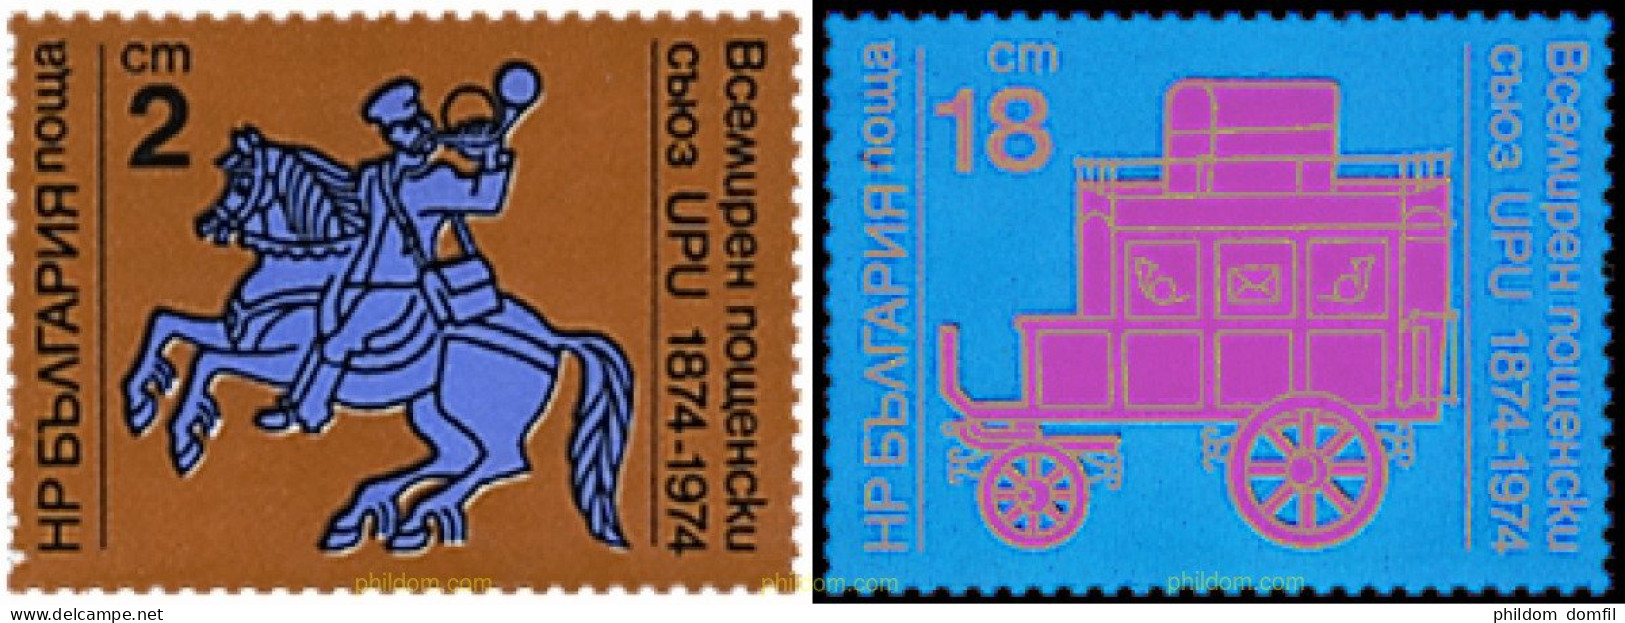 81530 MNH BULGARIA 1974 CENTENARIO DE LA UNION POSTAL UNIVERSAL - Chevaux